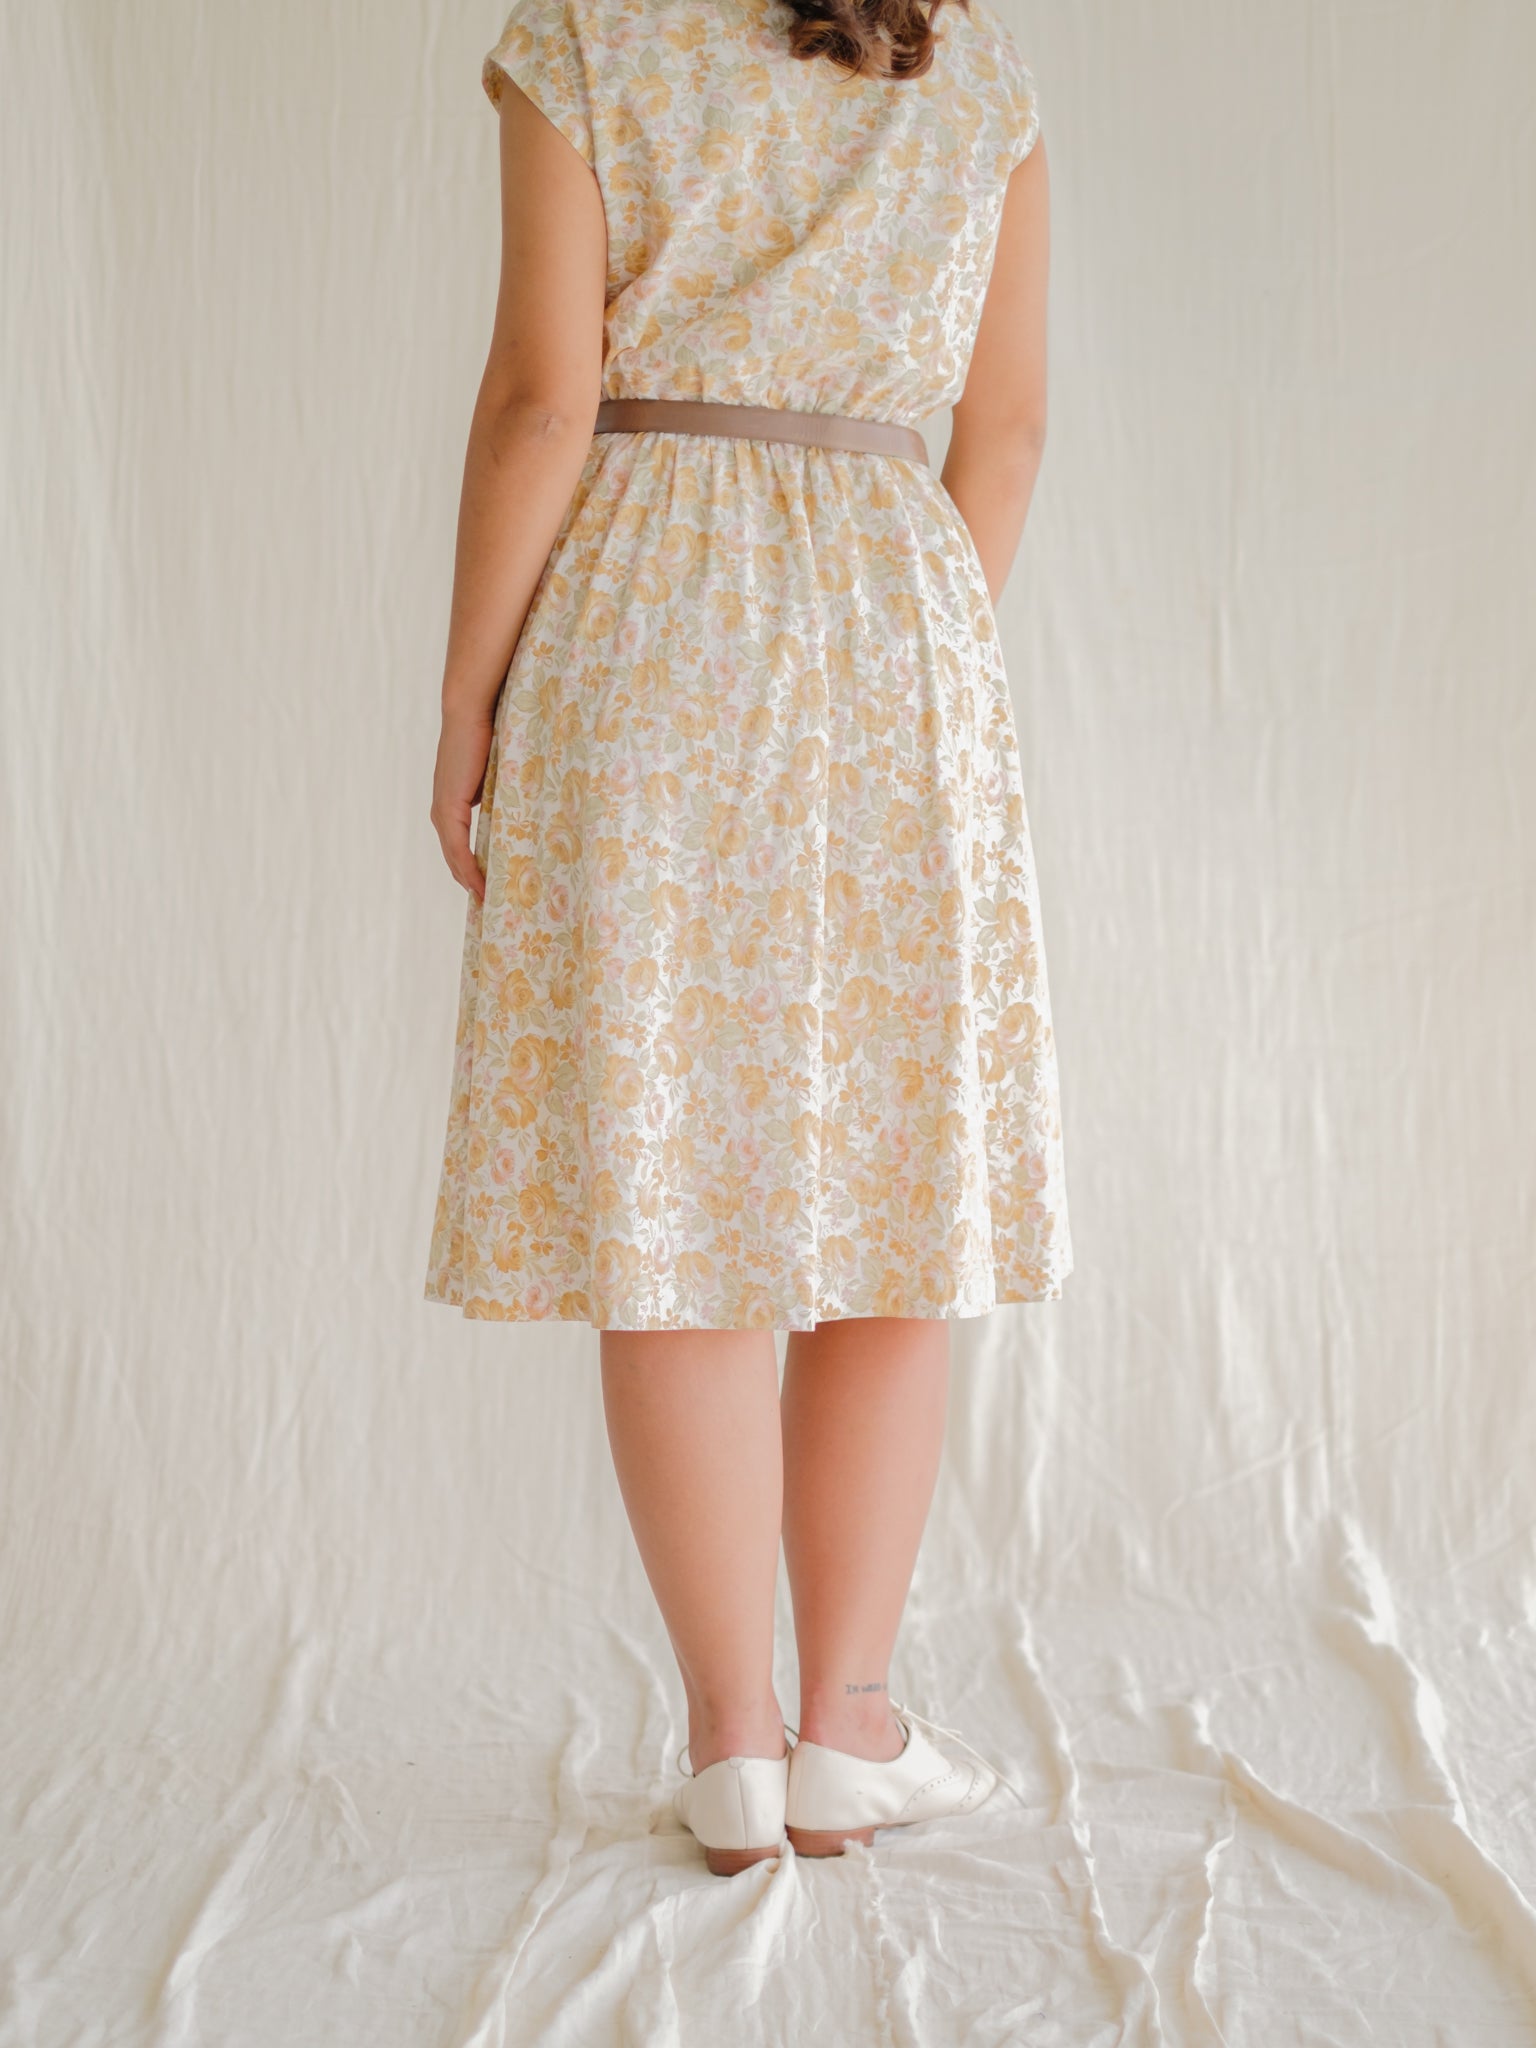 Cream floral cotton vintage dress